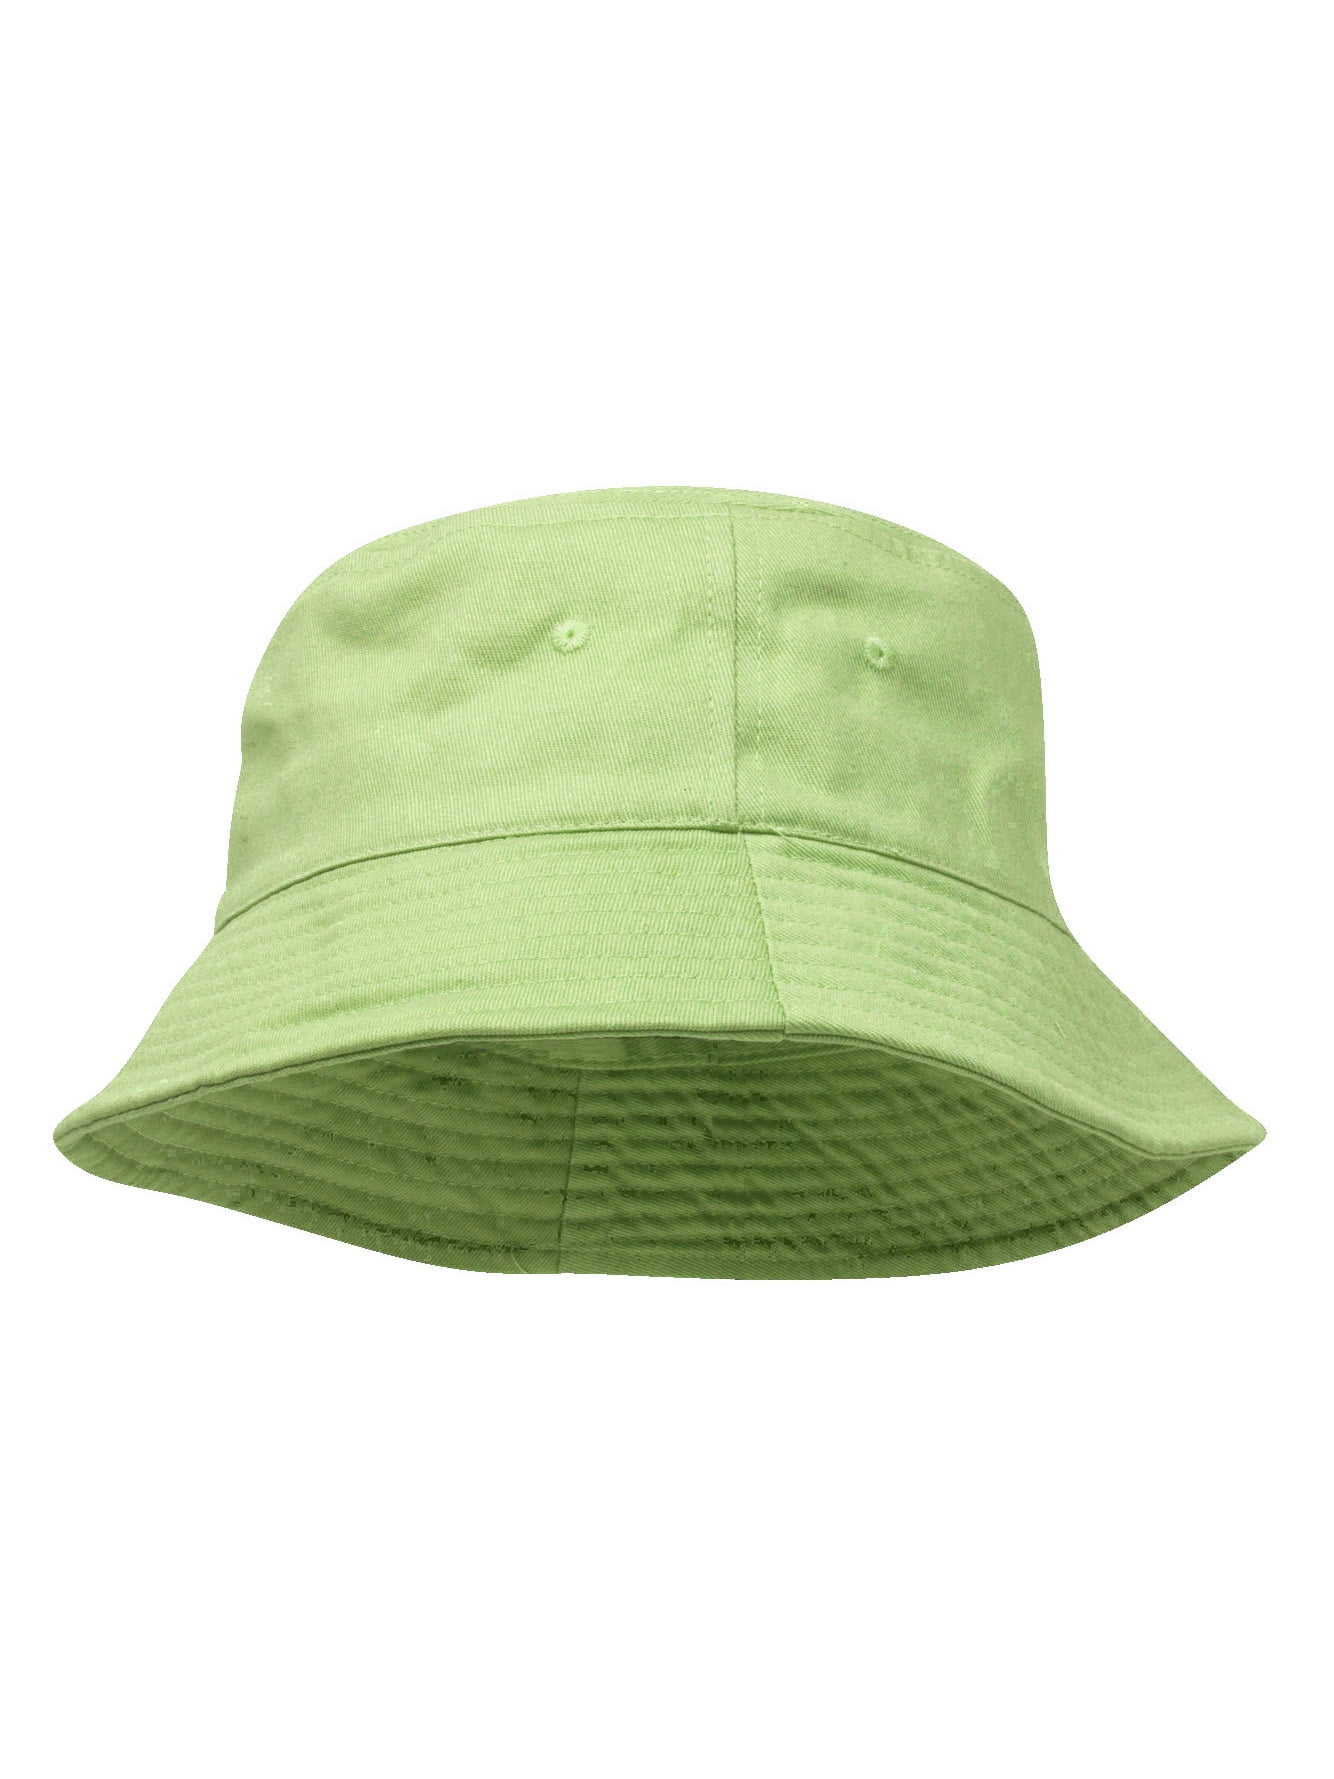 TopHeadwear Blank Cotton Bucket Hat - Apple Green - SmallMedium